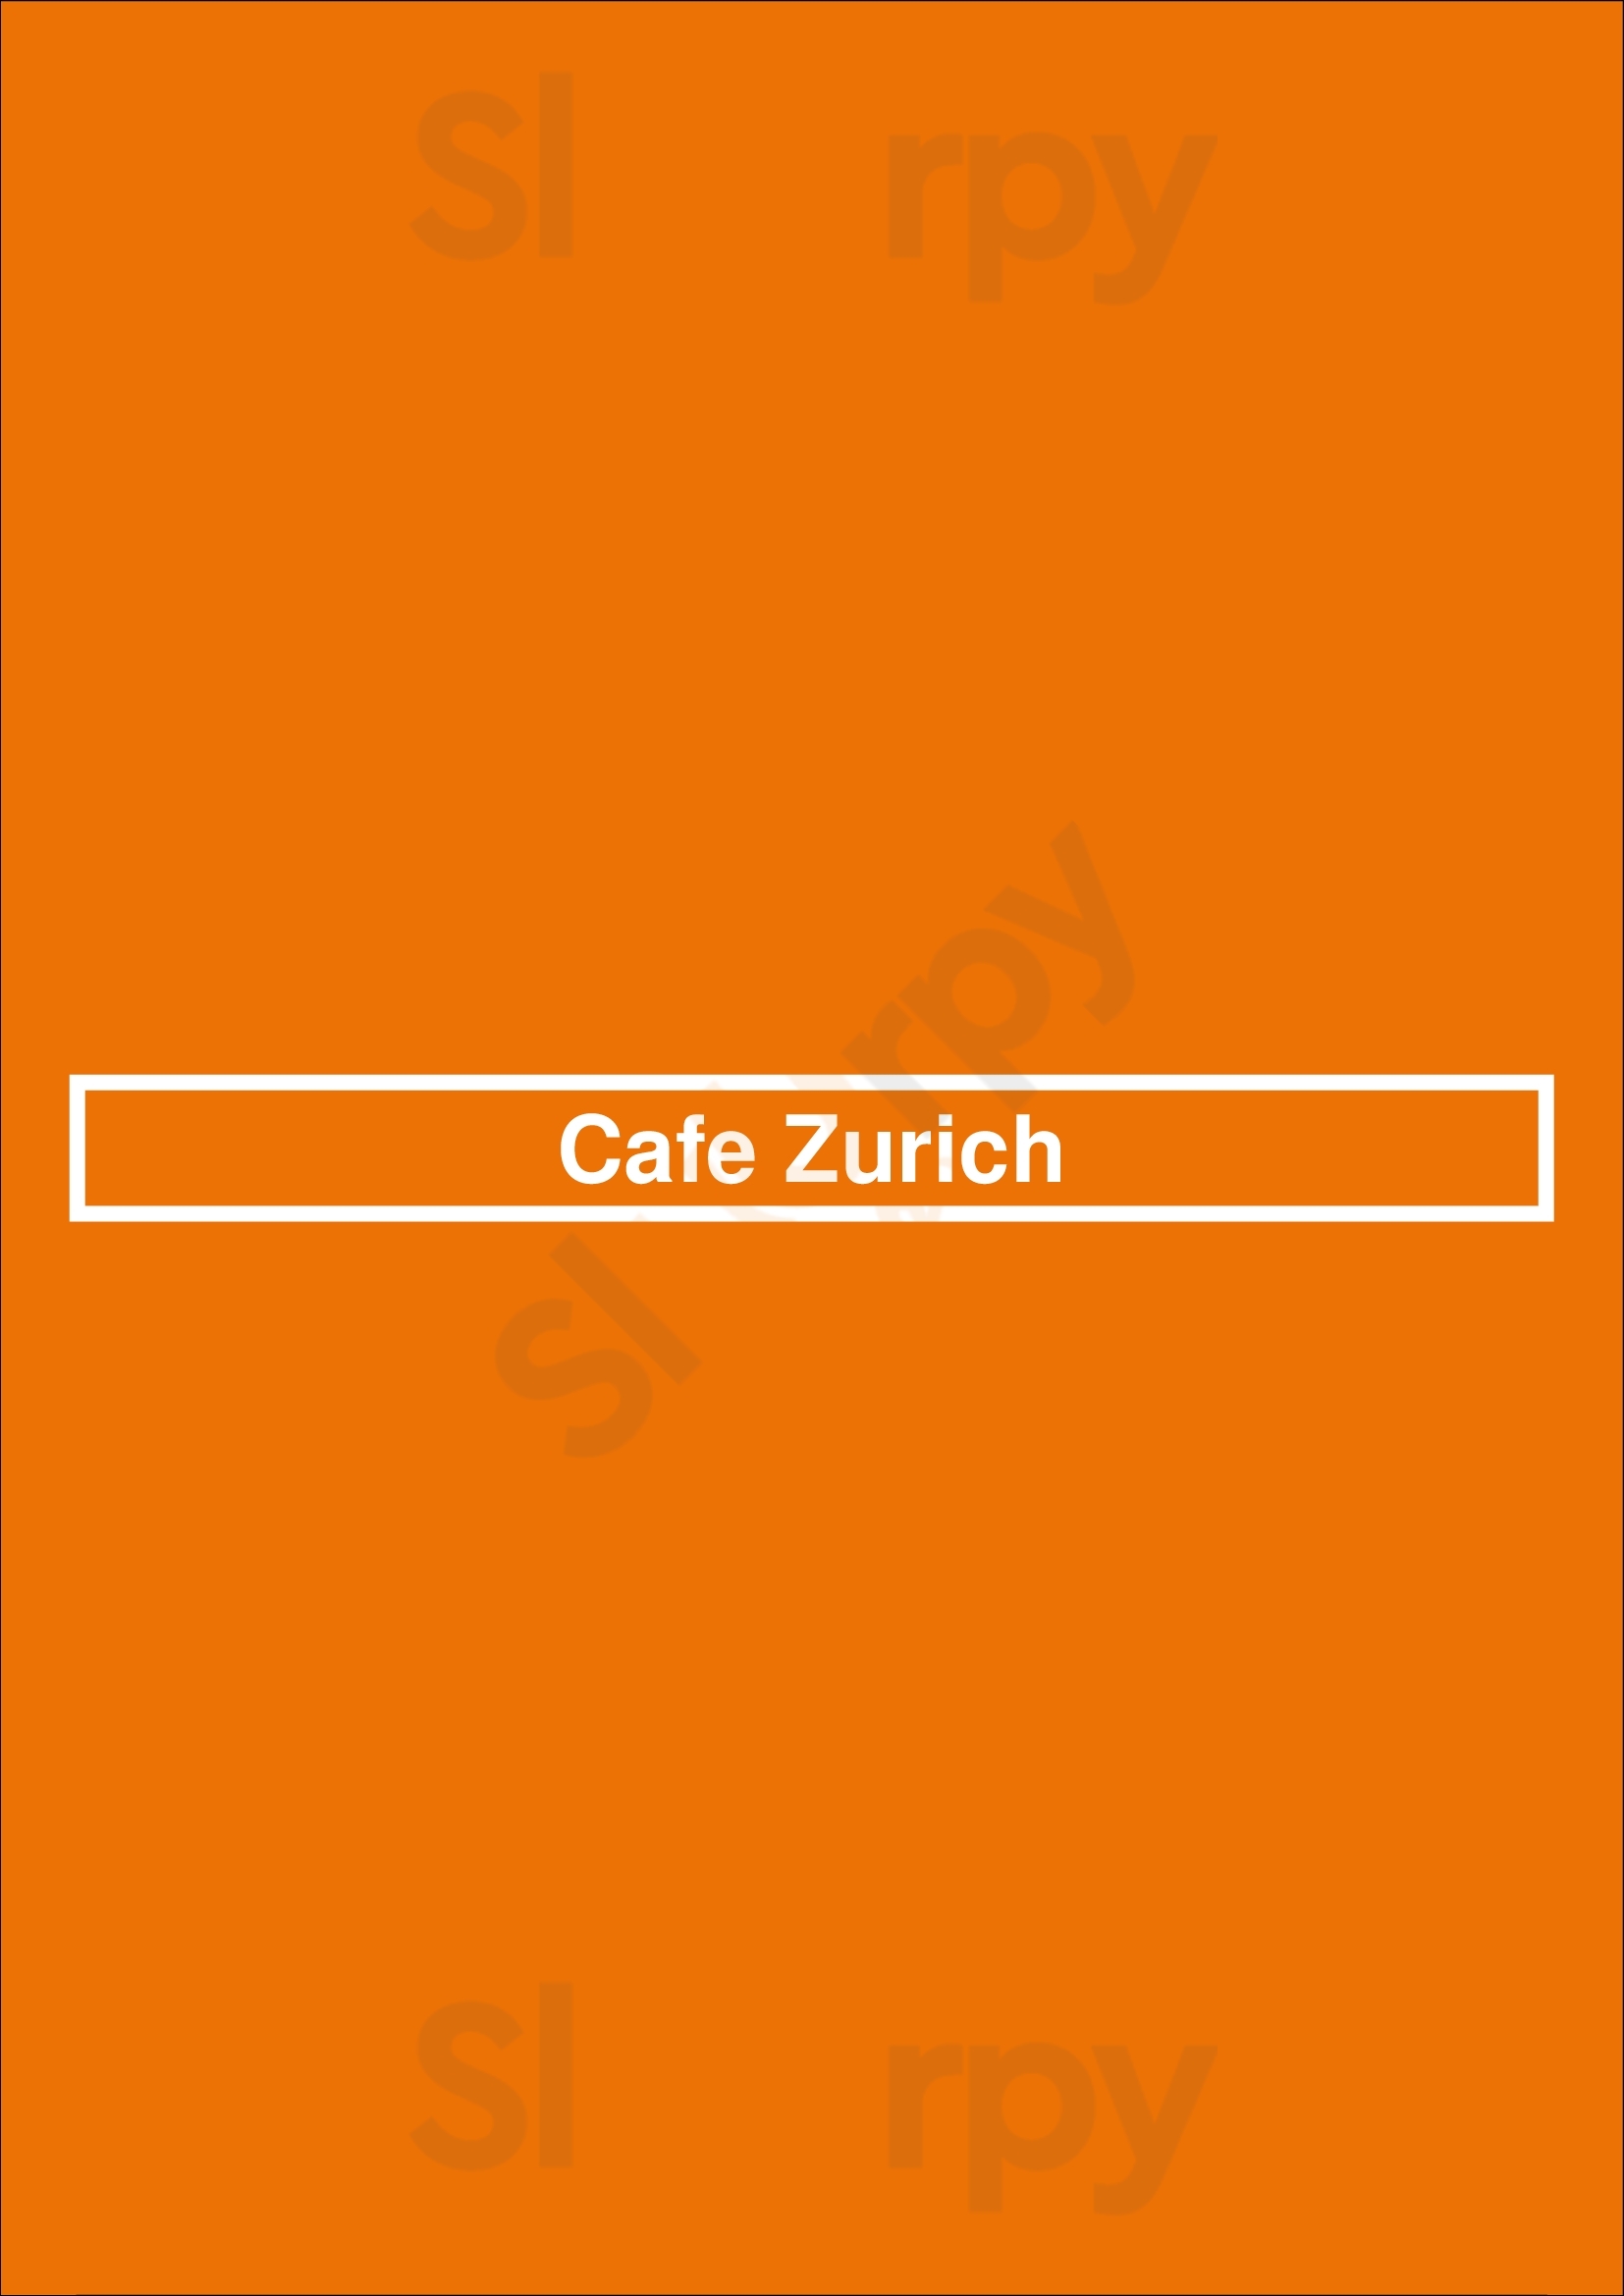 Cafe Zurich Amsterdam Menu - 1